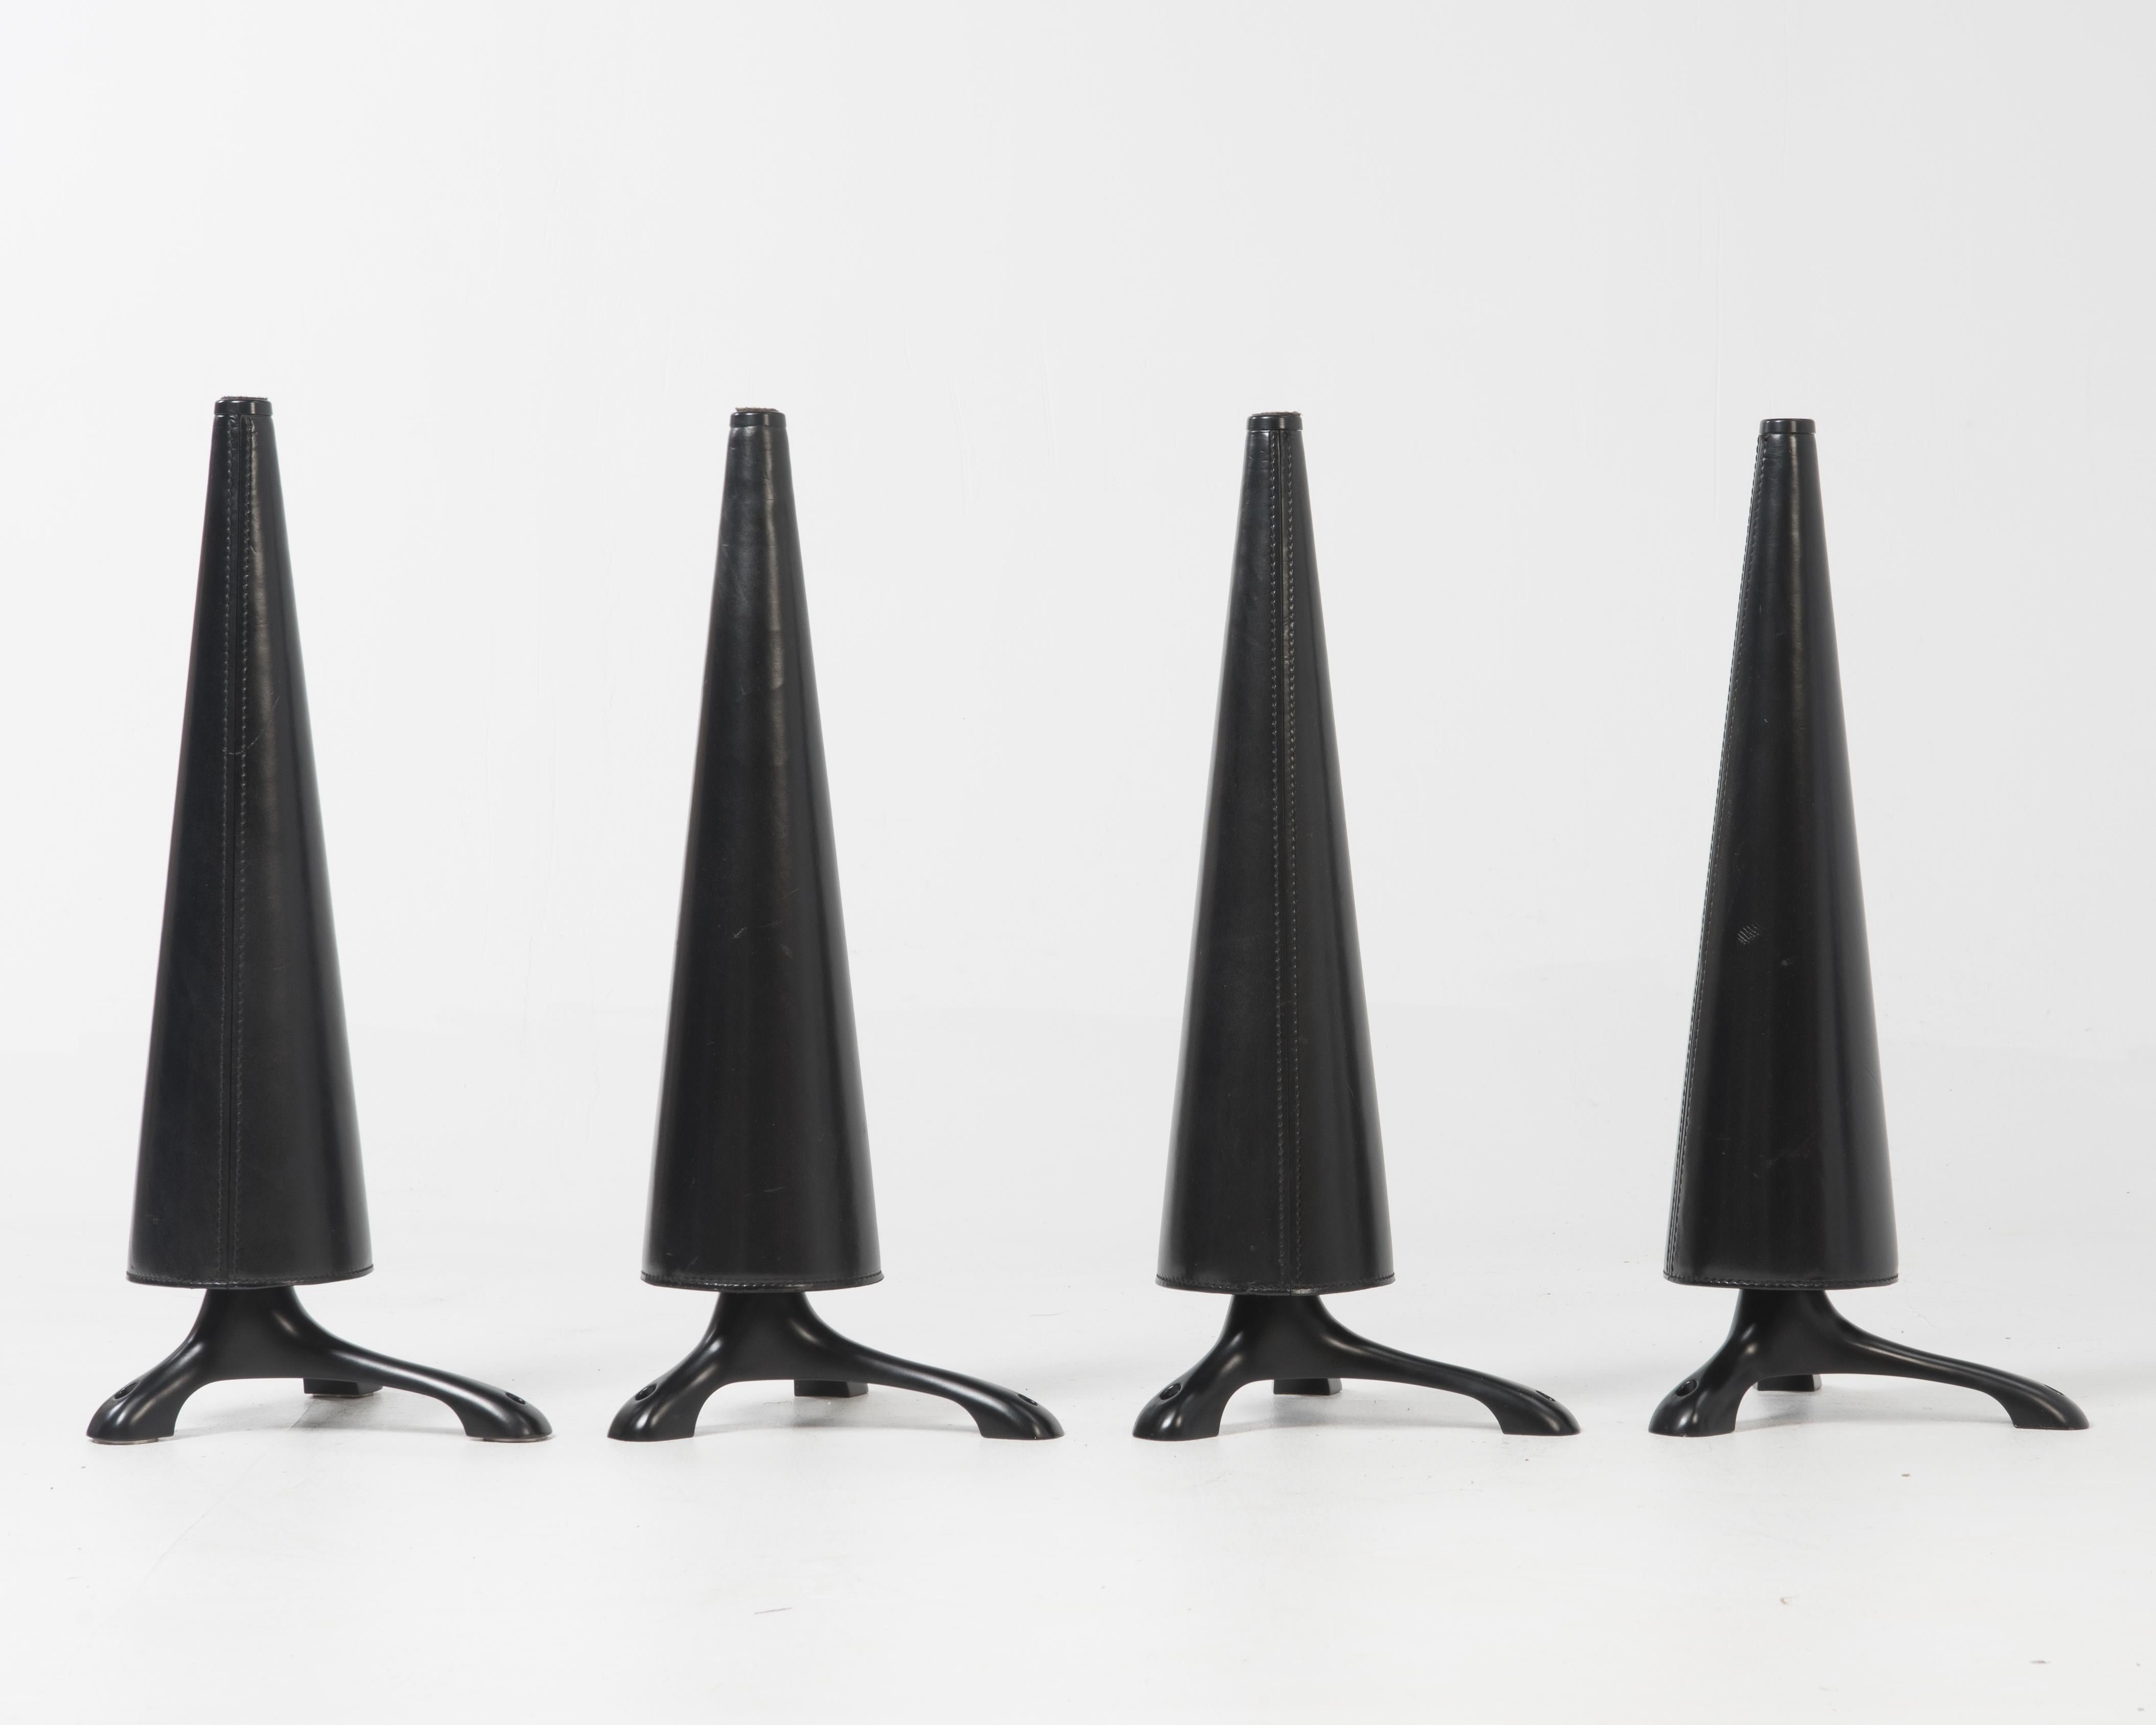 Quatre pieds coniques à visser pour la table Oskar (ou Oscar) conçue par Isoa Hosoe pour Cassina en 1991.

Chaque pied a trois points de contact pour fixer les pieds à un plateau de table en verre. La cinquième photographie montre les trois disques